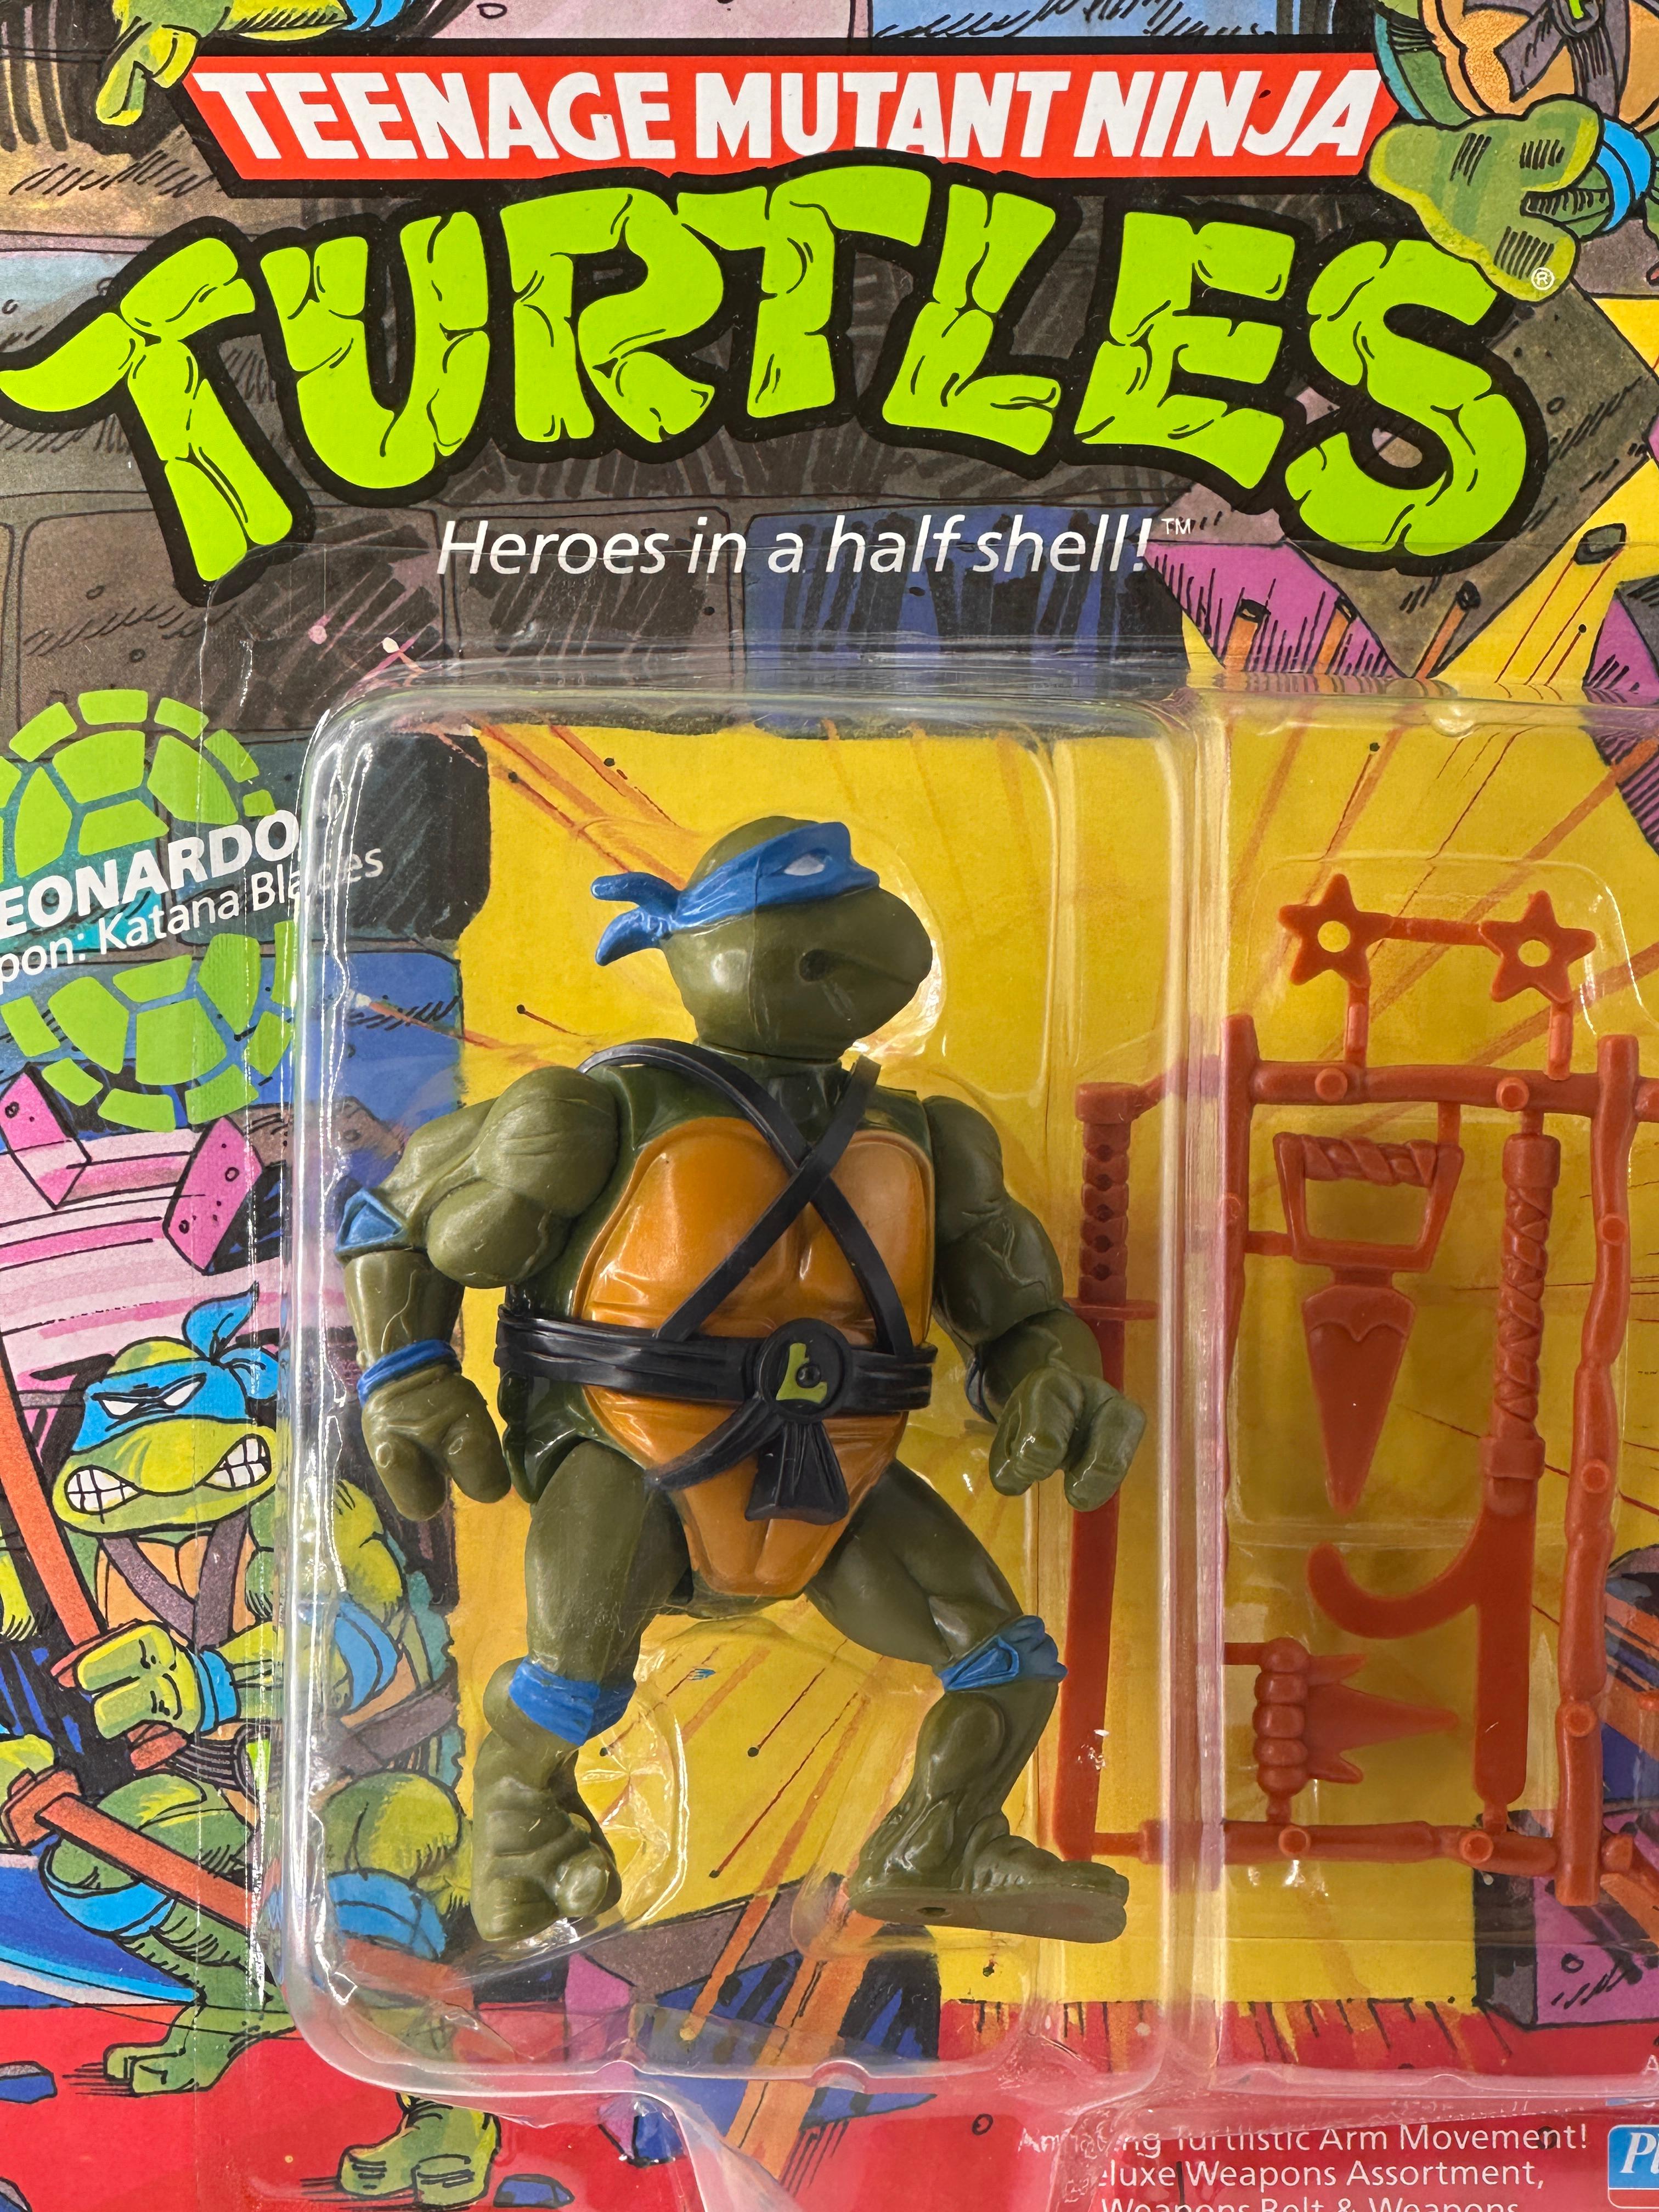 1988 TMNT/Teenage Mutant Ninja Turtles Playmates Leonardo Action Figure